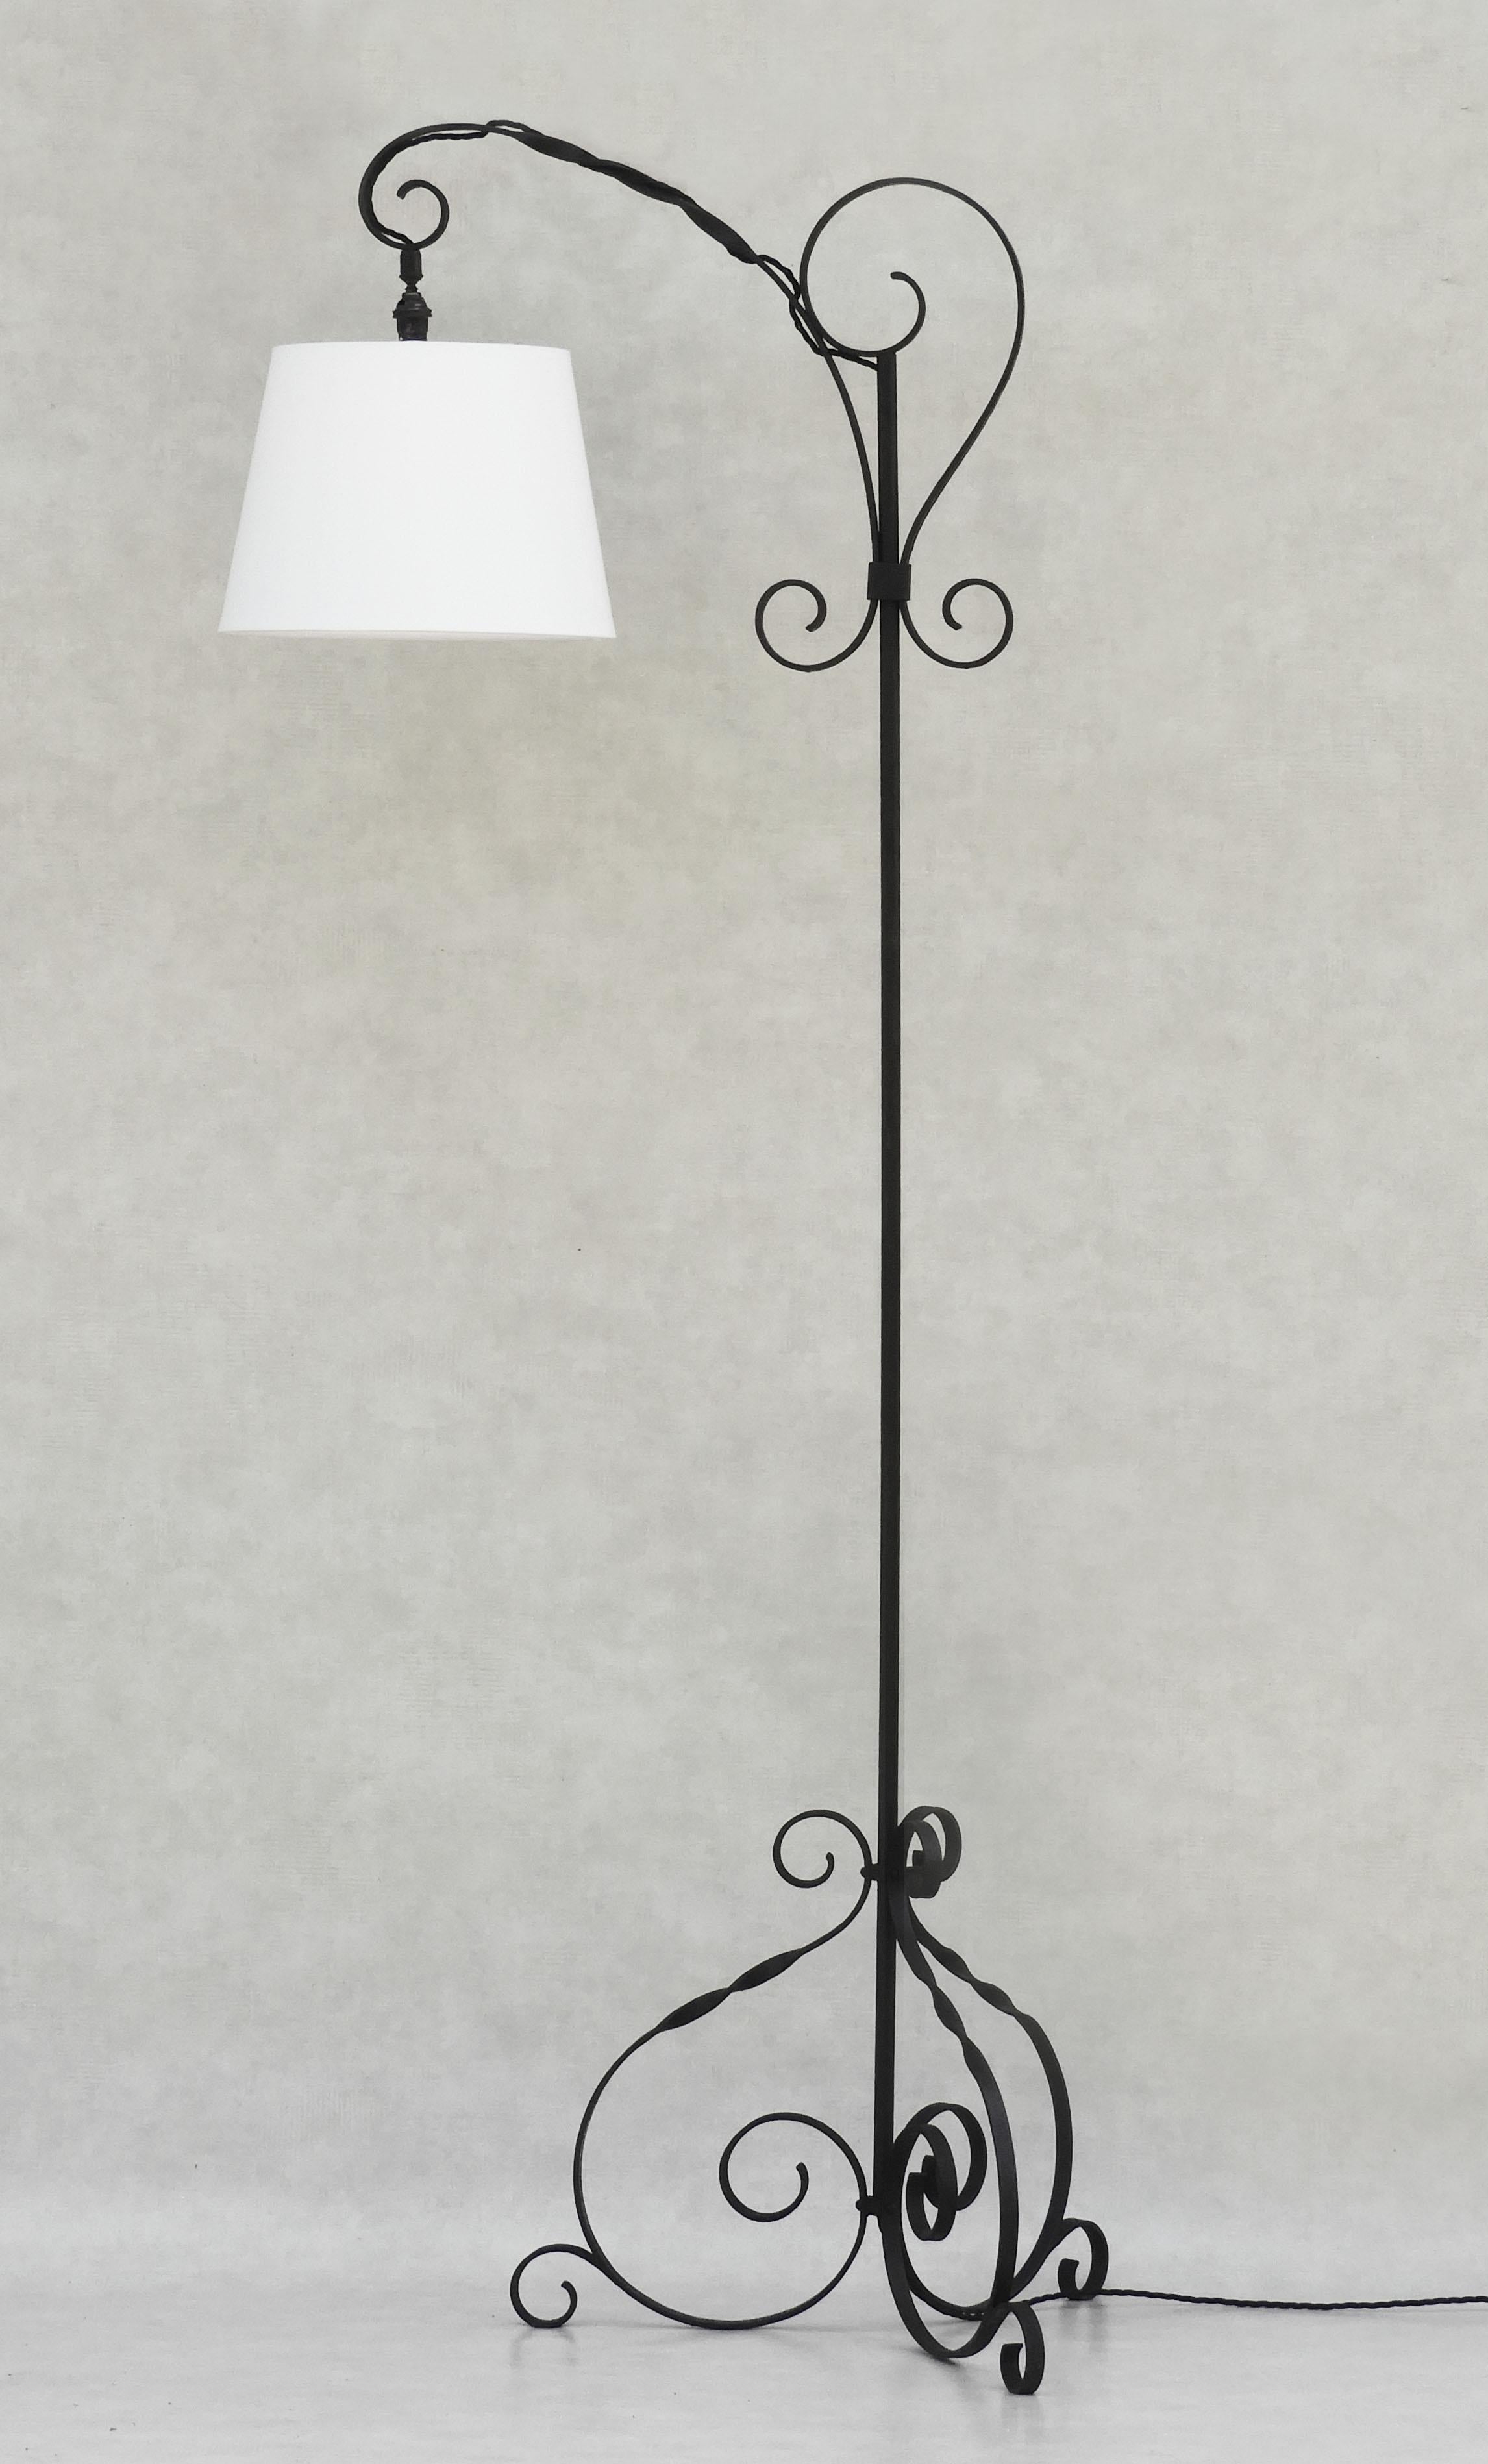 Vintage mid century wrought iron floor lamp France c1950

Lampe en fer forgé de haute taille, de fabrication artisanale française, avec une armature articulée originale, parfaite comme liseuse au-dessus d'un fauteuil ou d'un canapé, tout aussi